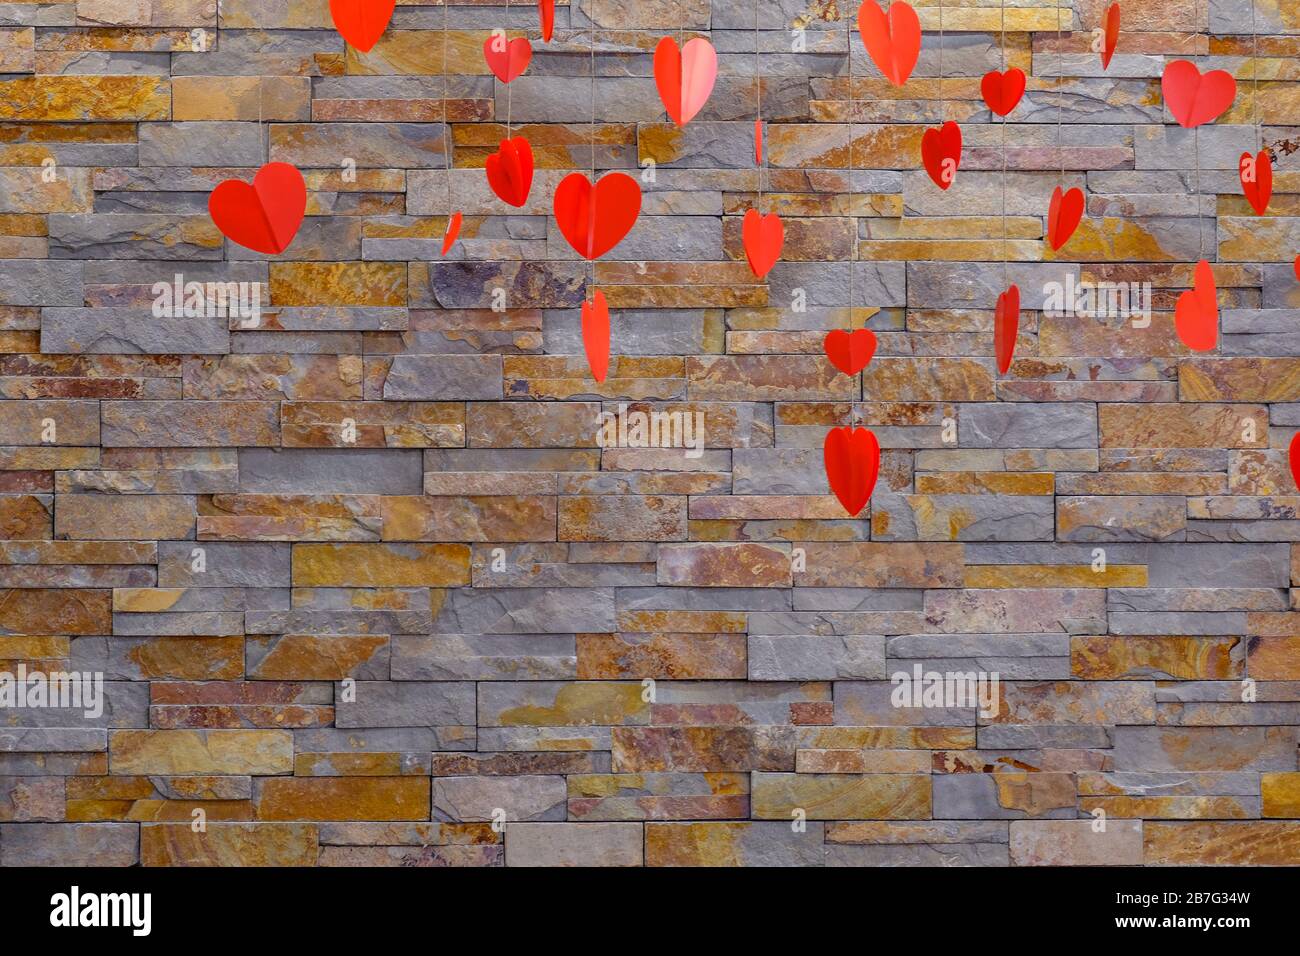 Fondo de piedra artificial en la pared. Colgando corazones rojos para el día de San Valentín. Productos de papel caseros. Foto de stock